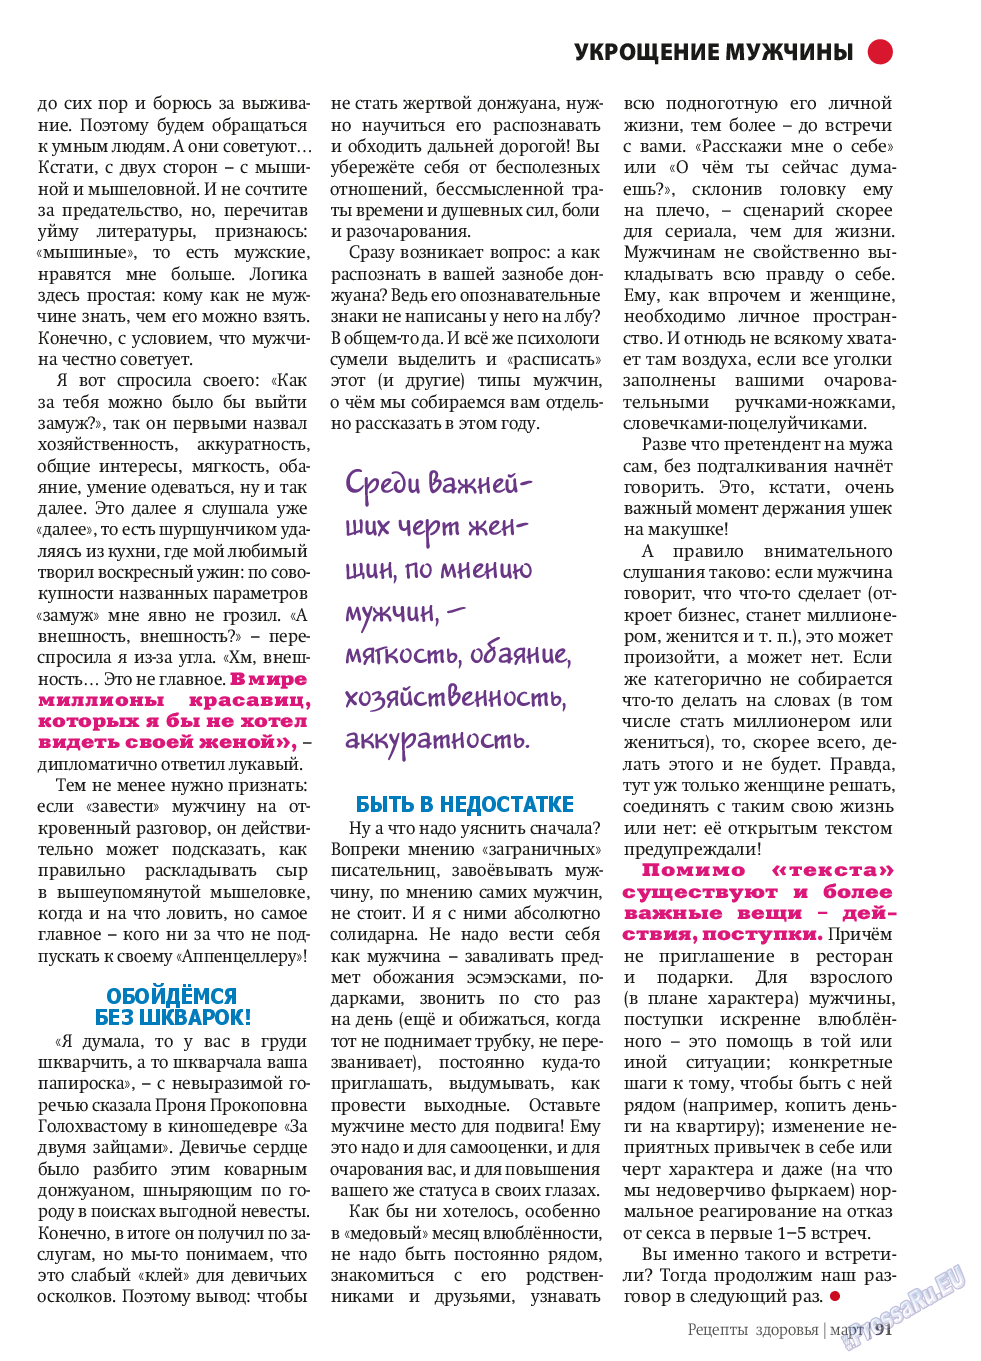 Рецепты здоровья, журнал. 2014 №58 стр.91